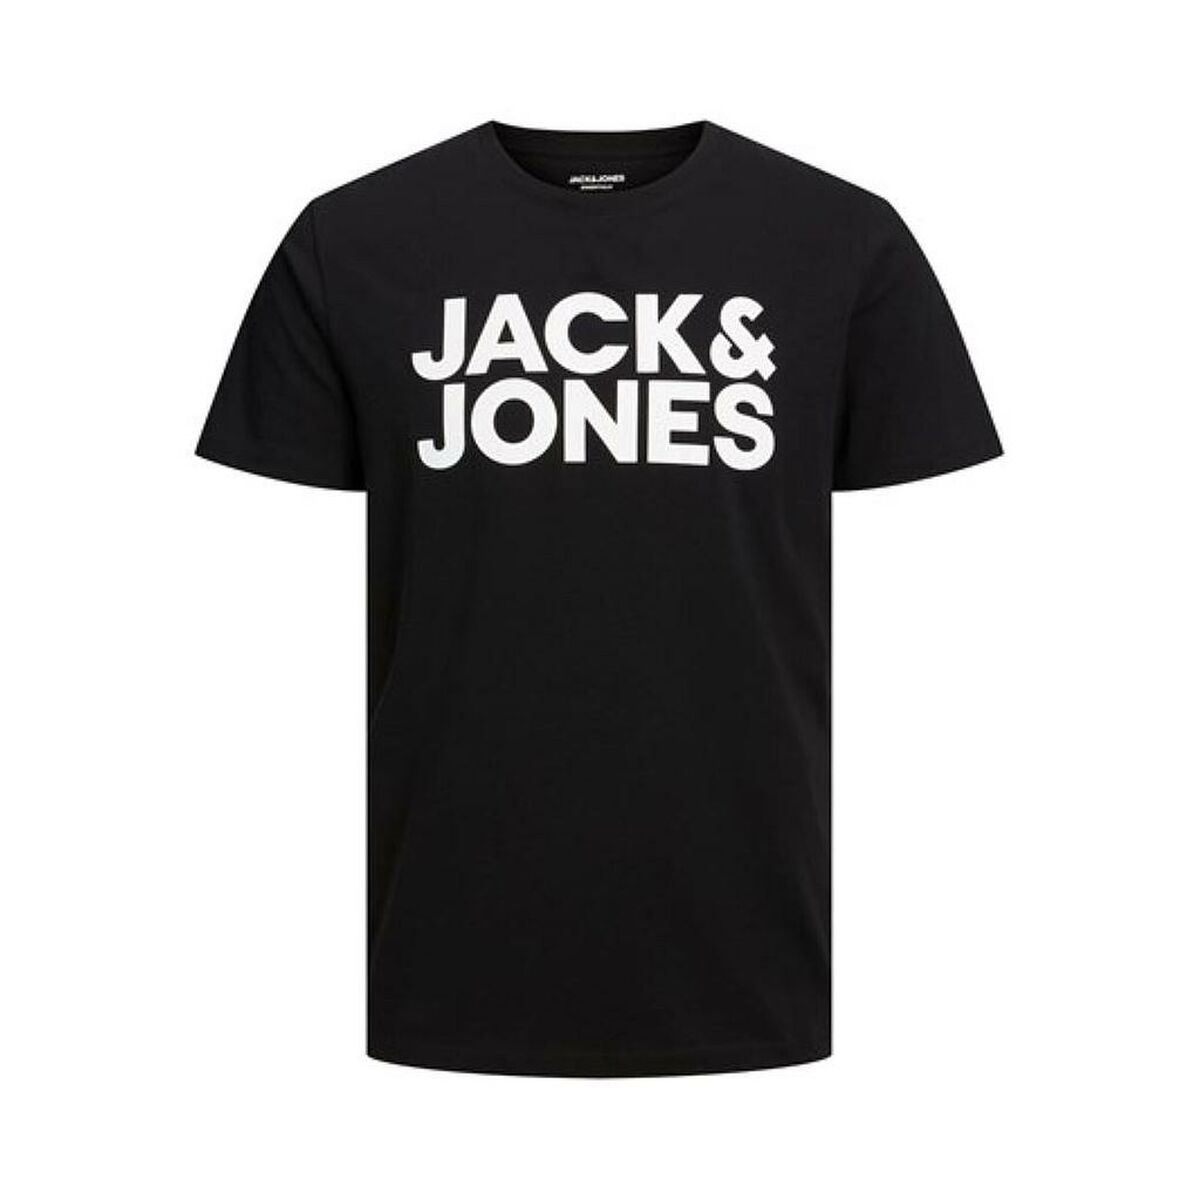 Osta tuote Miesten T-paita Jack & Jones JJECORP LOGO TEE 12151955 Musta verkkokaupastamme Korhone: Urheilu & Vapaa-aika 20% alennuksella koodilla VIIKONLOPPU